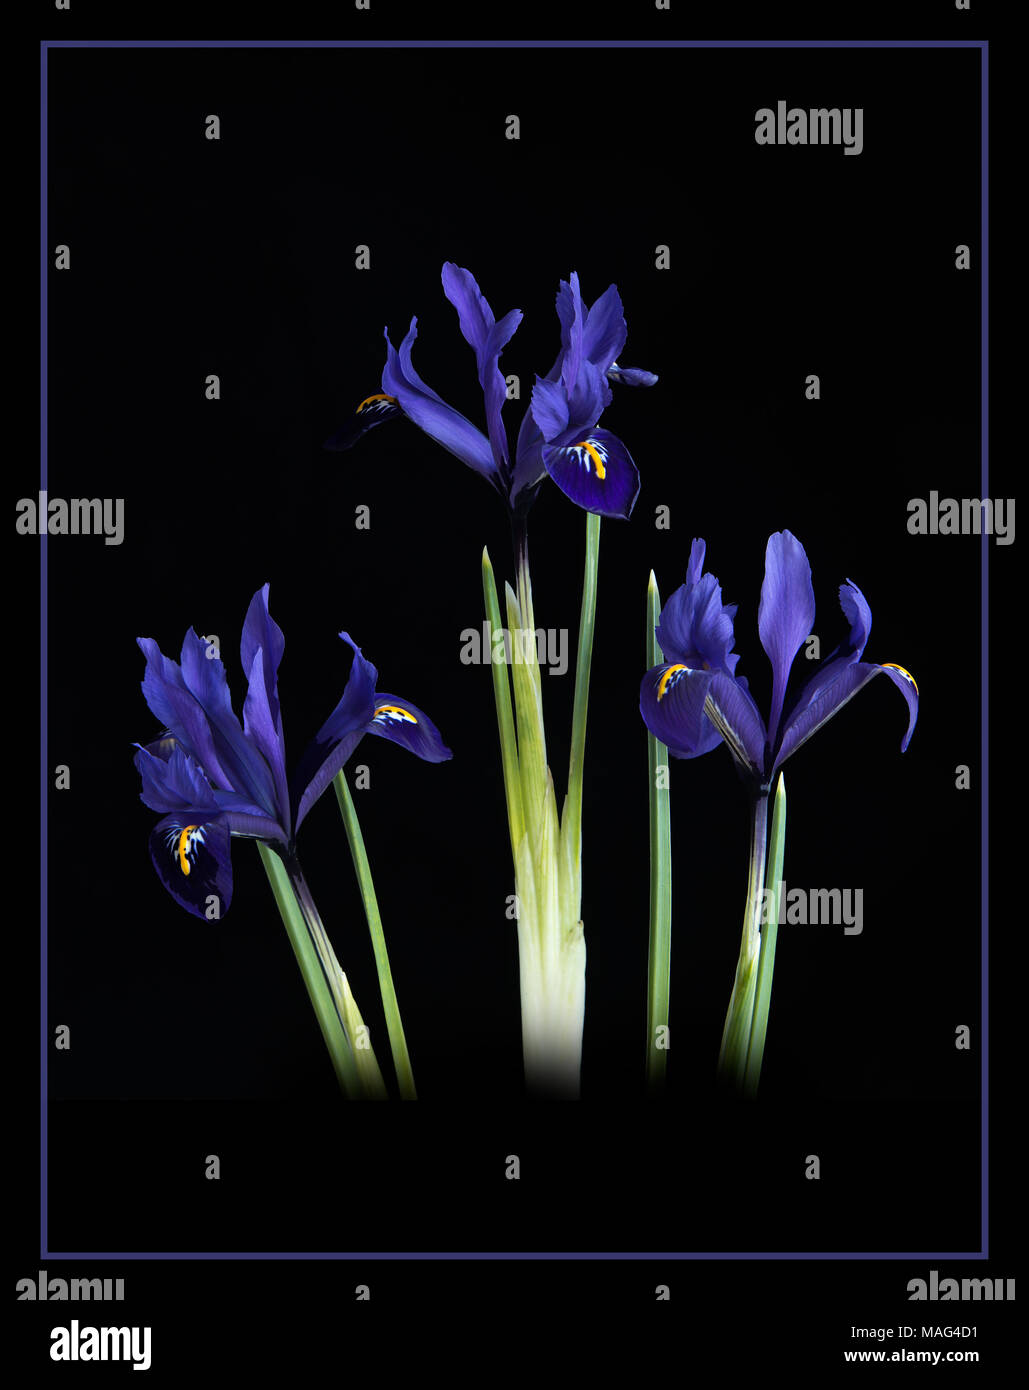 Drei Stämme der Blau-grünen Iris Rreticulata vor einem schwarzen Hintergrund. Stockfoto